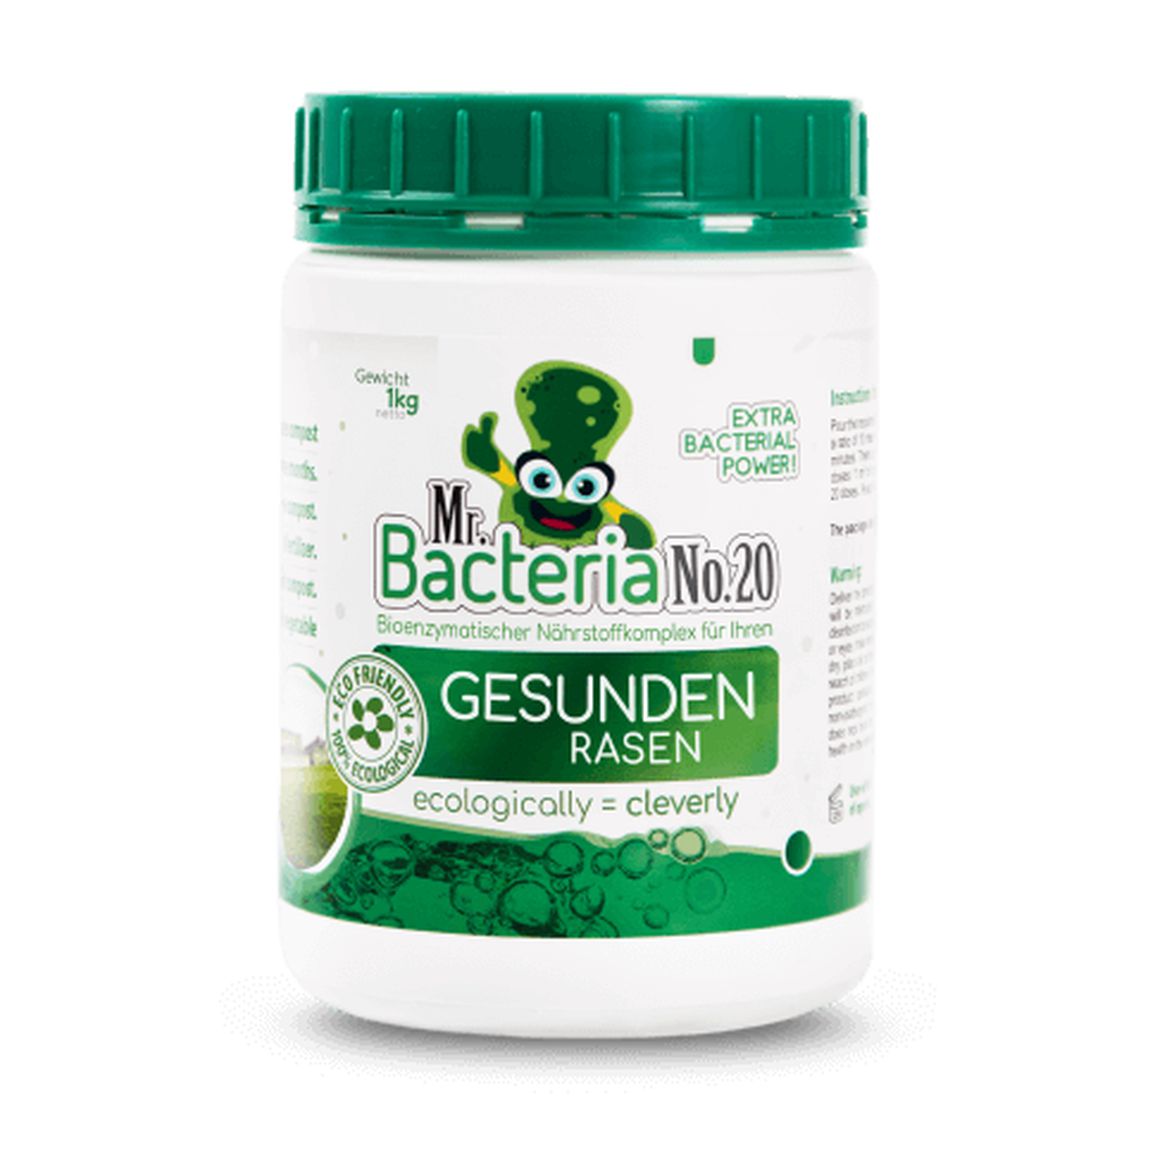 Mr. Bacteria No.20 Bioenzymatischer Nährstoffkomplex für Ihren